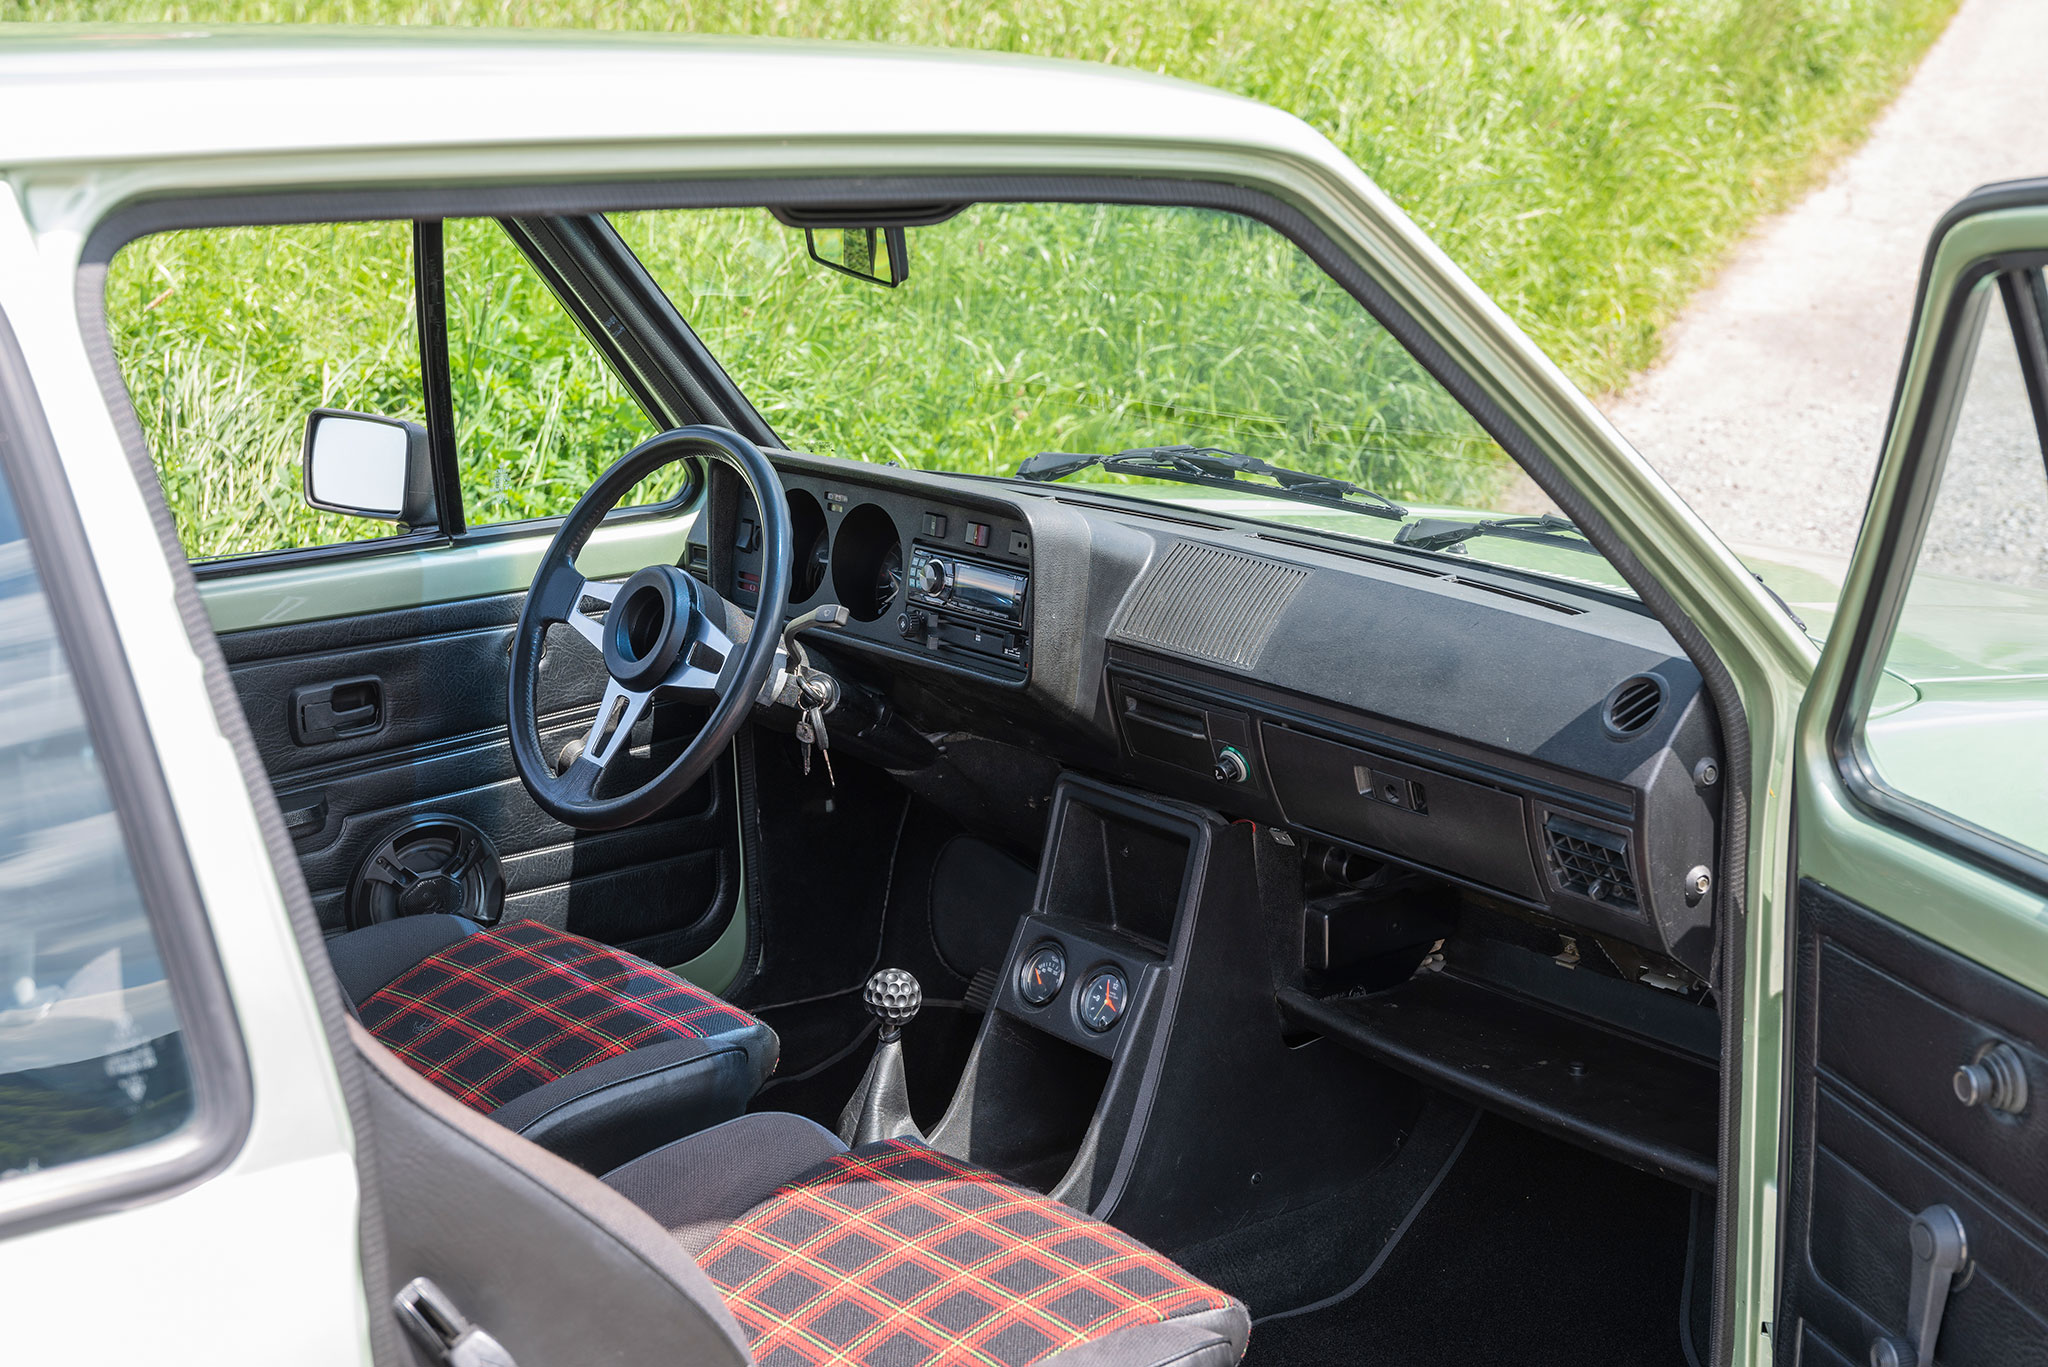 1980 Volkswagen Golf GTI – la balle de golf sur le levier de vitesses et le tissu à carreaux des sièges, toute une ambiance.